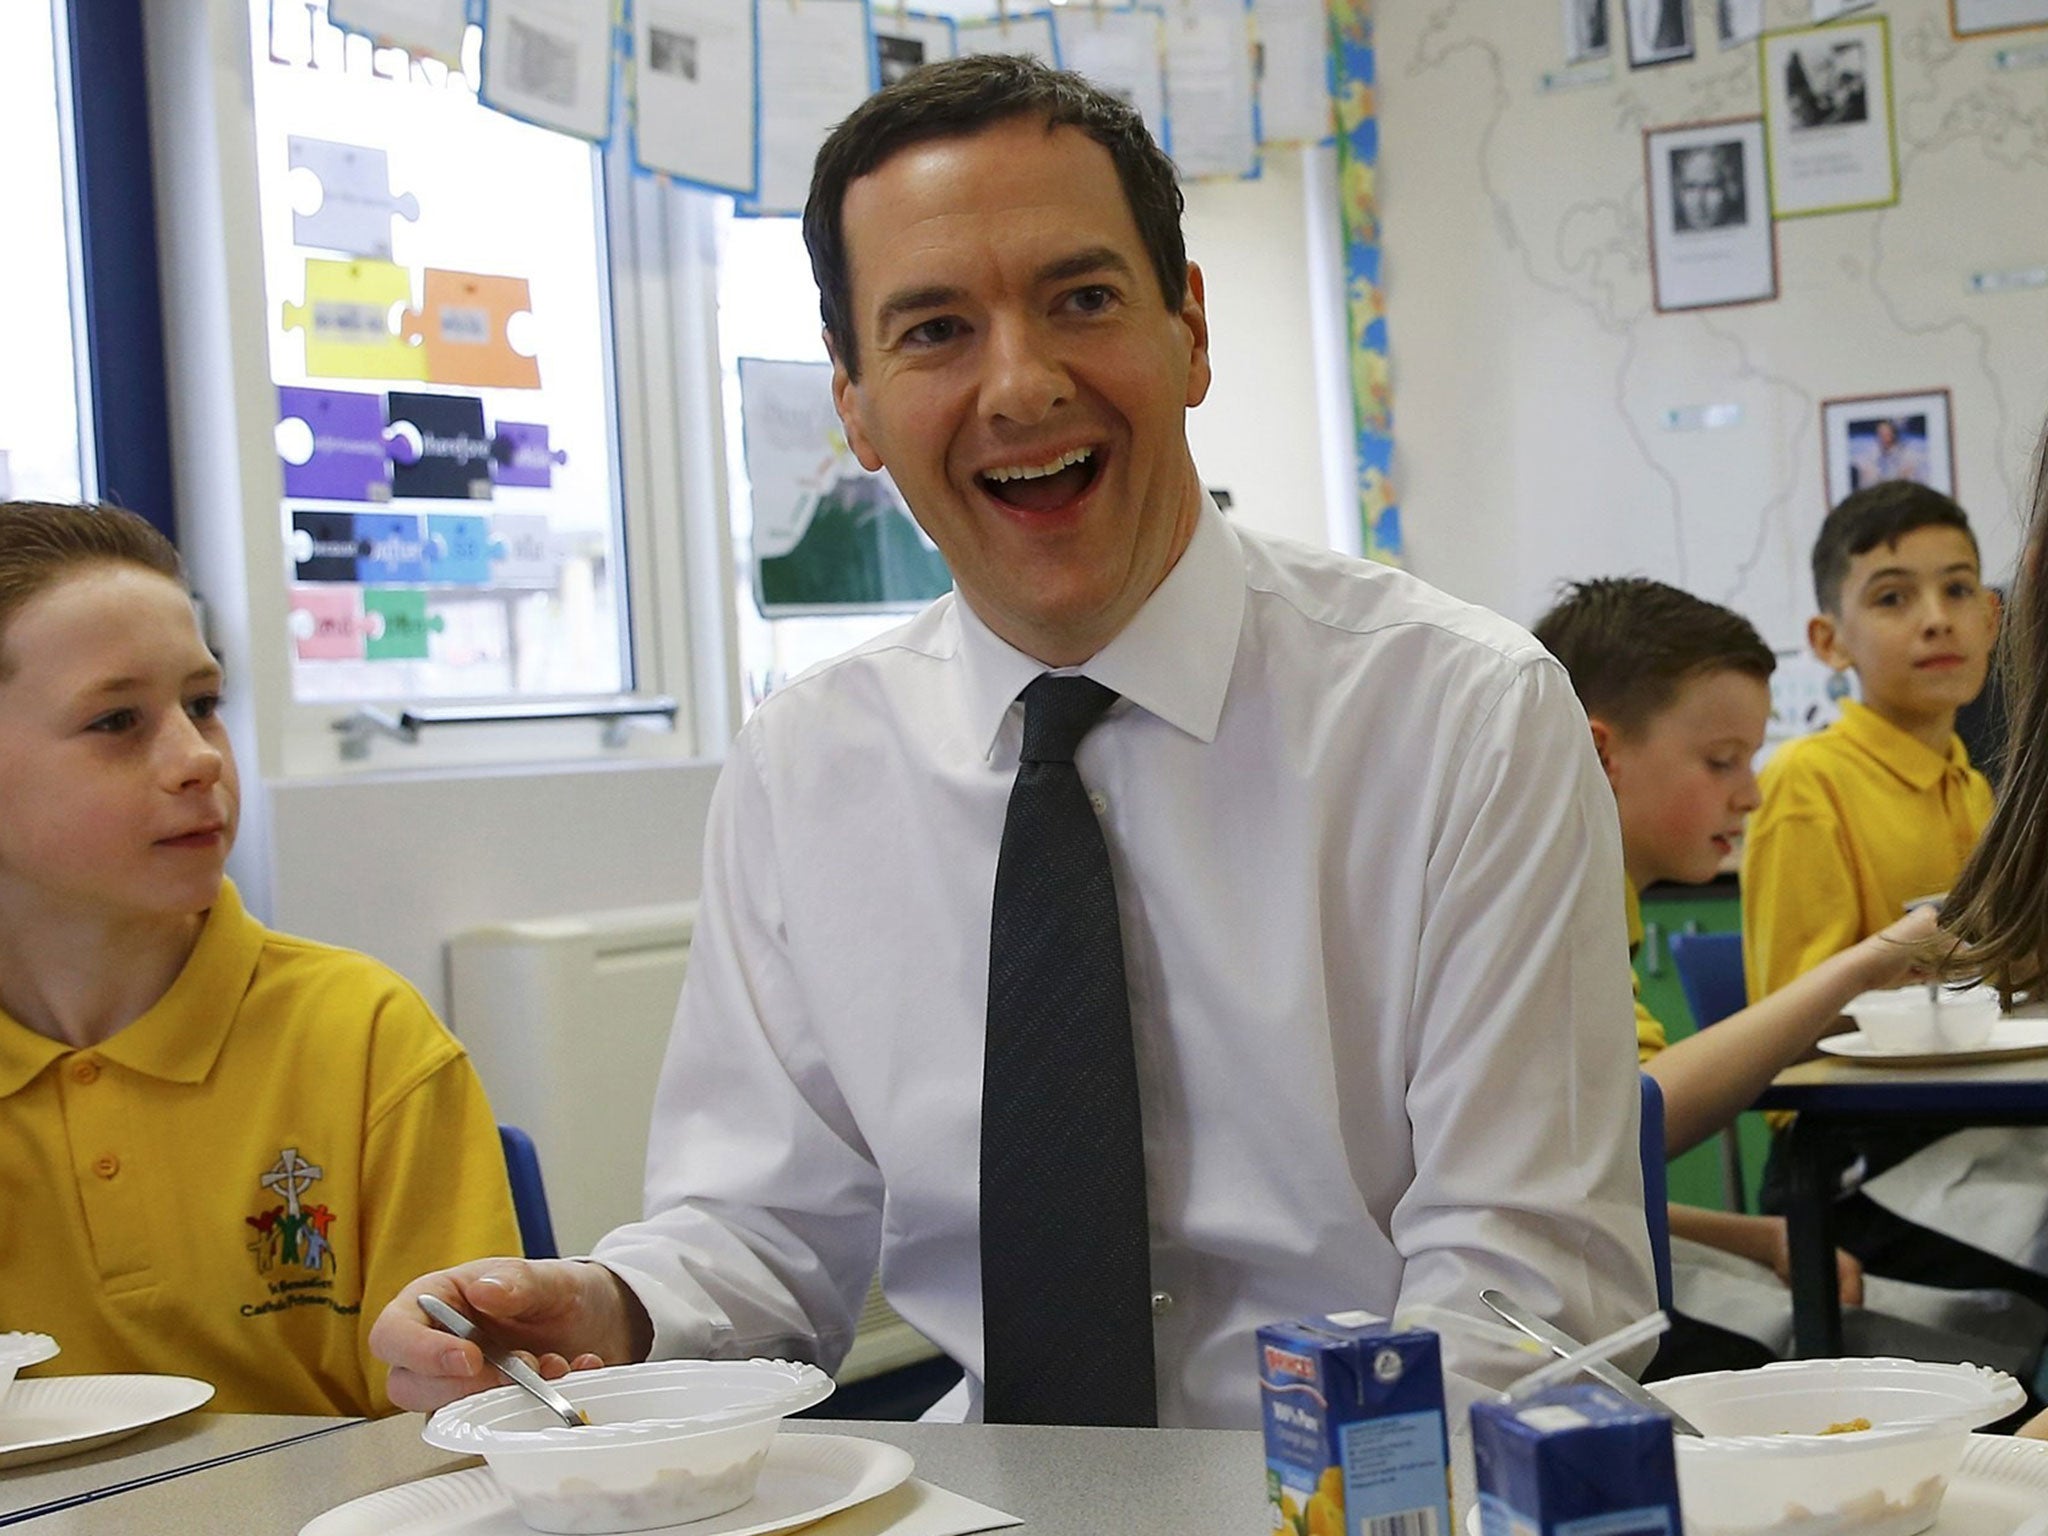 George Osborne visits a school this week